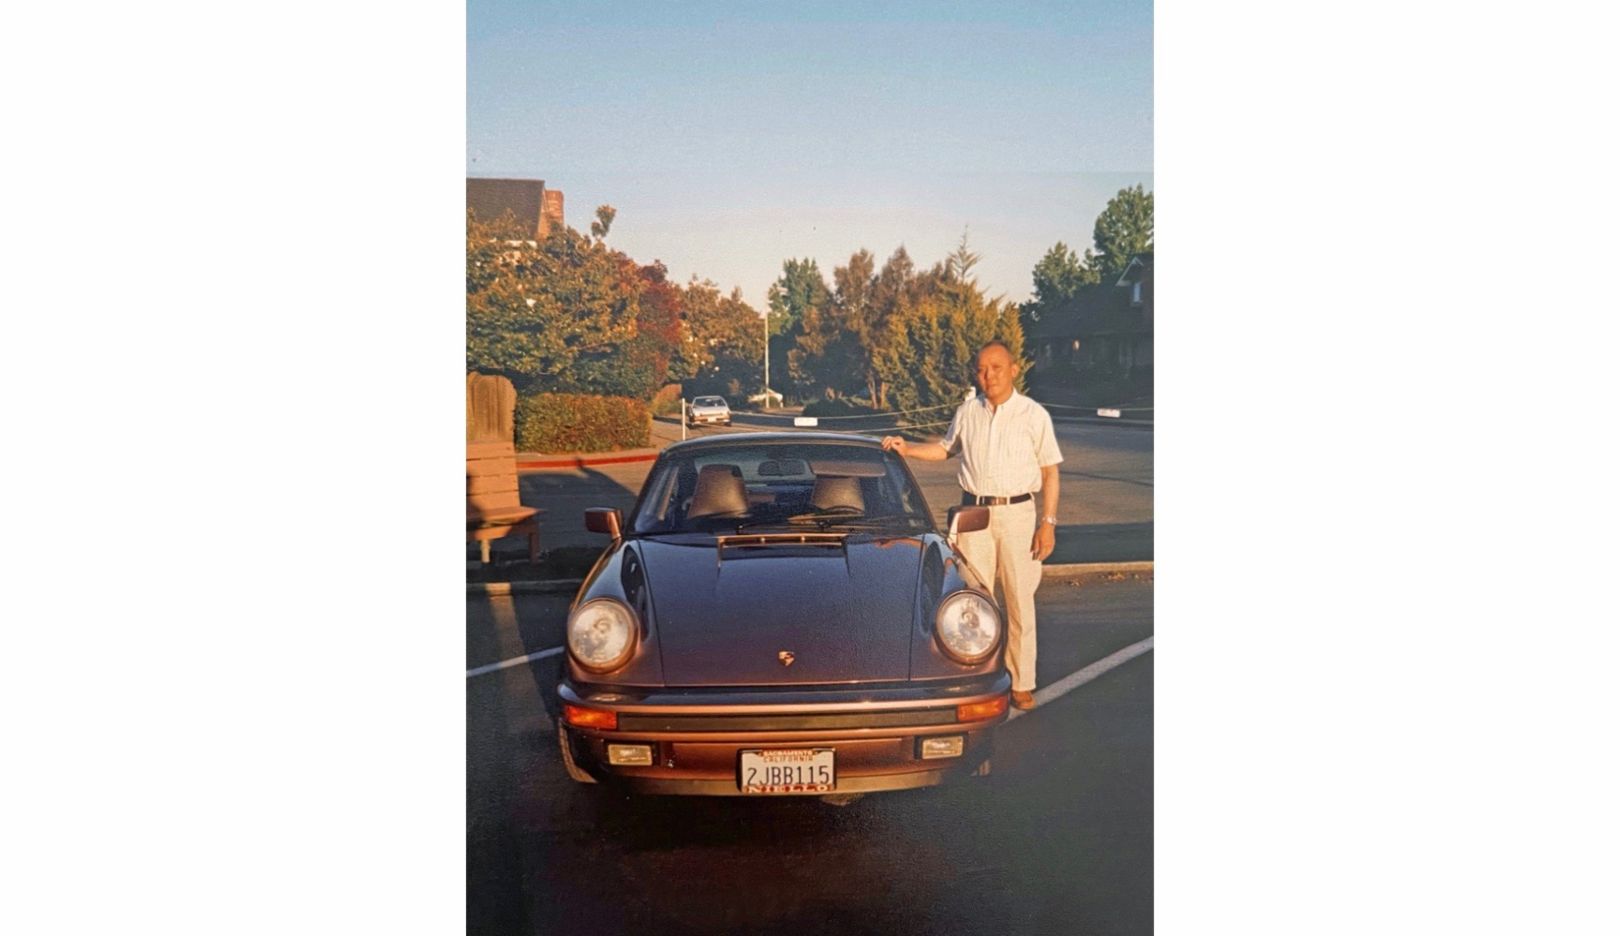 George Wu kupił swoje pierwsze Porsche 911, gdy przeszedł na emeryturę. Jego syn, aktor Daniel Wu, miał wówczas 12 lat i mógł wybrać kolor − zdecydował się na rzadki kolor czerwień cassis.